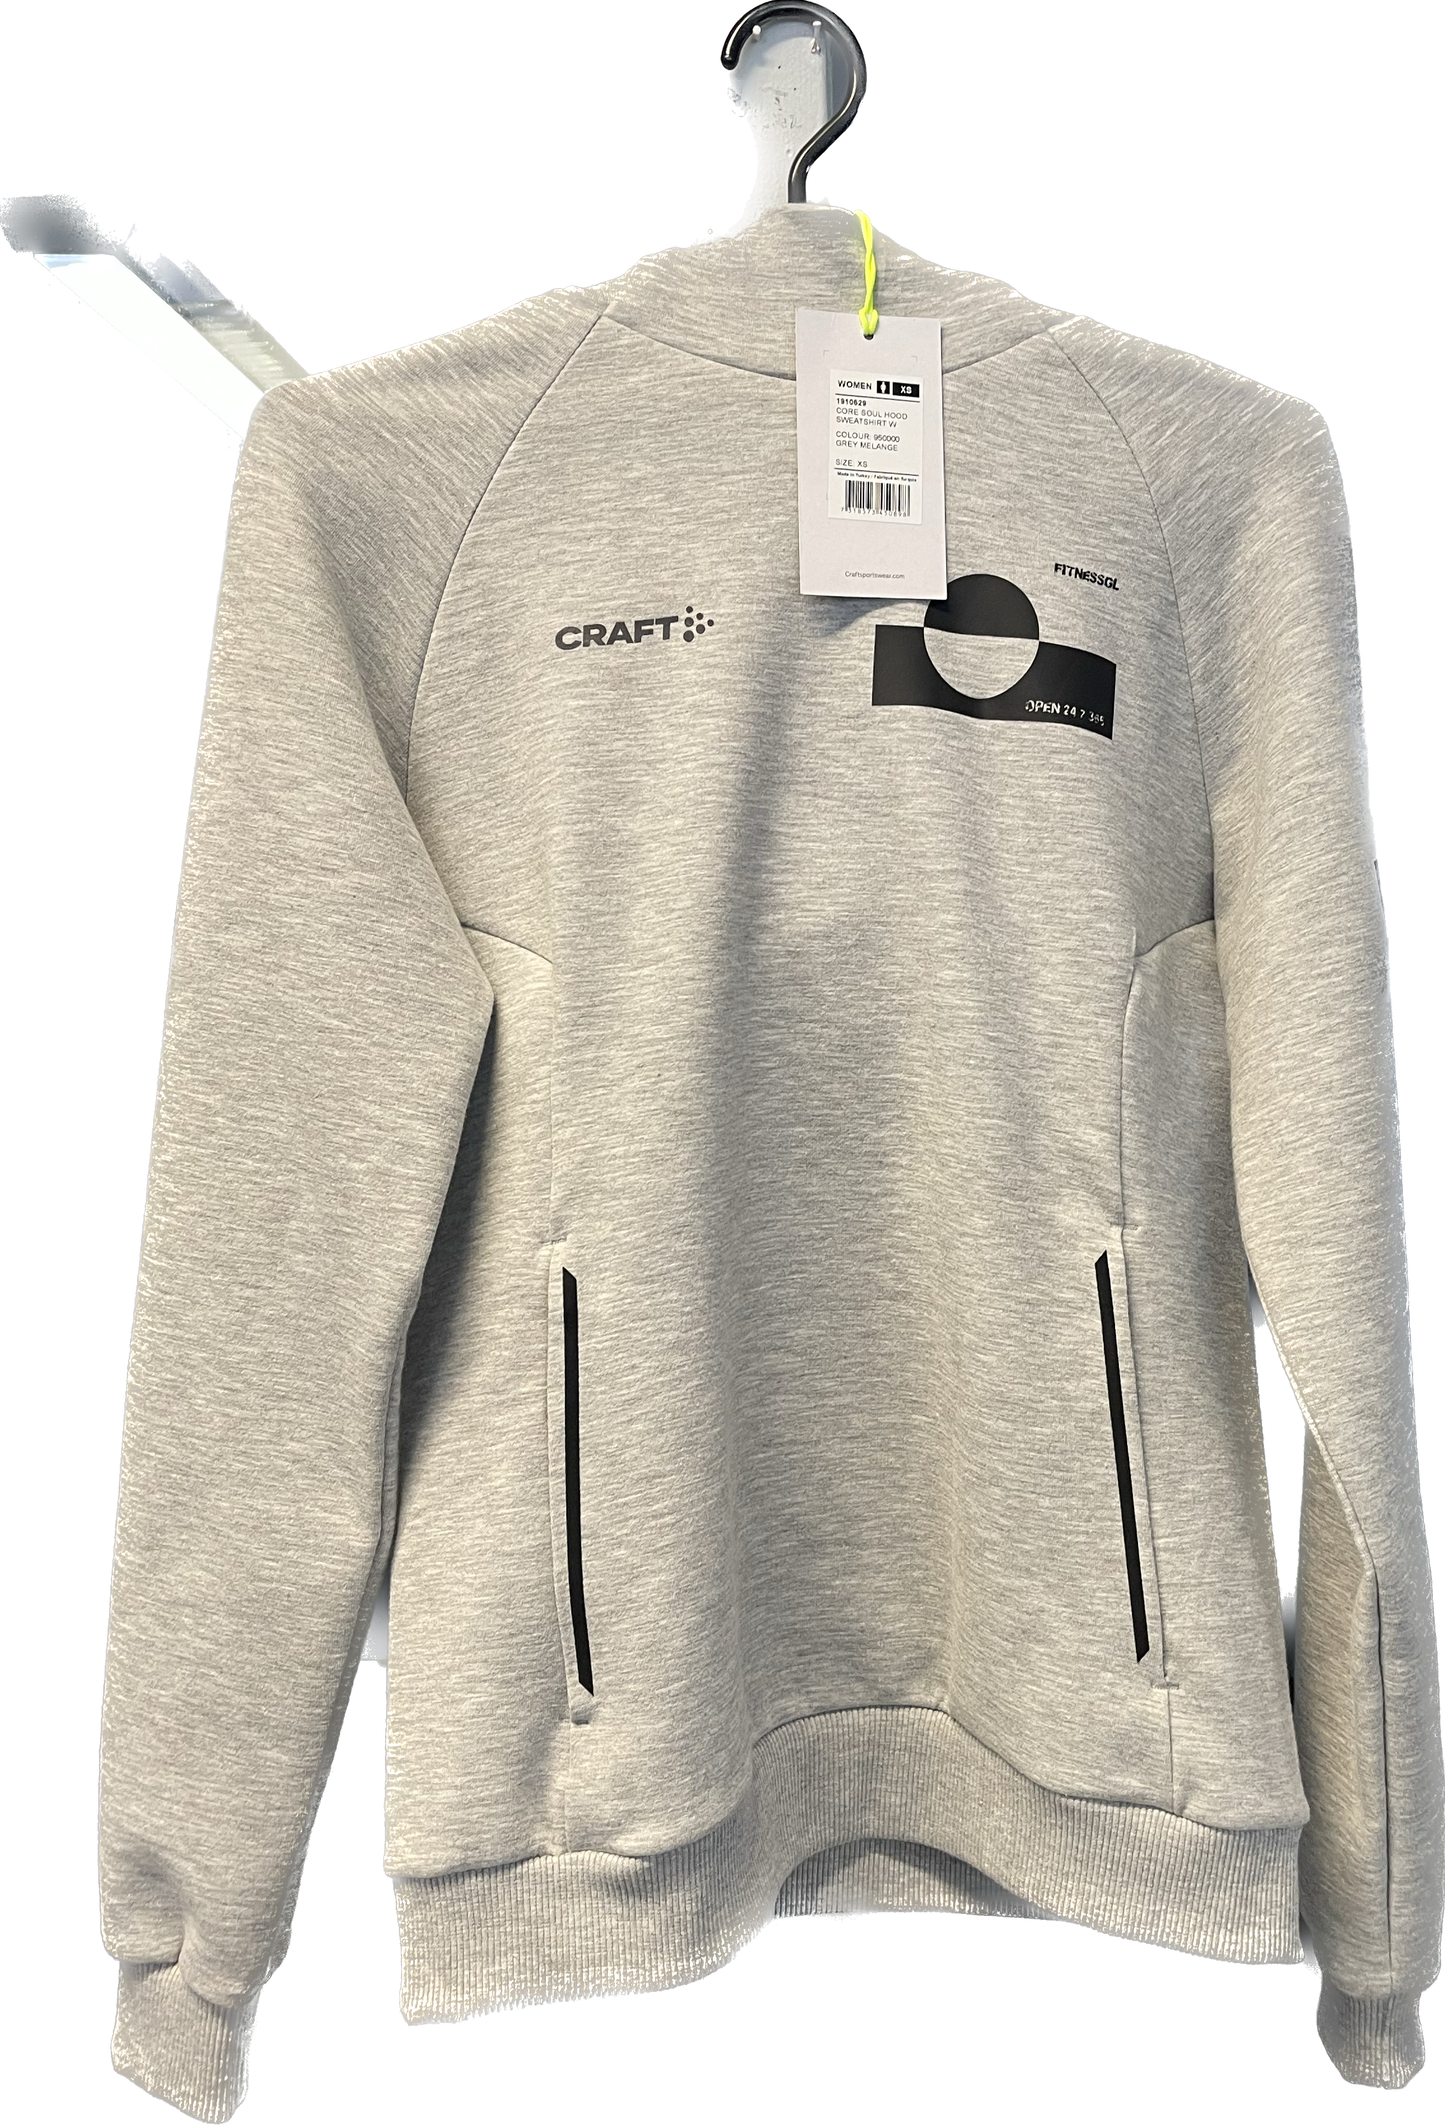 fitnessgl hoodie womens (grey)